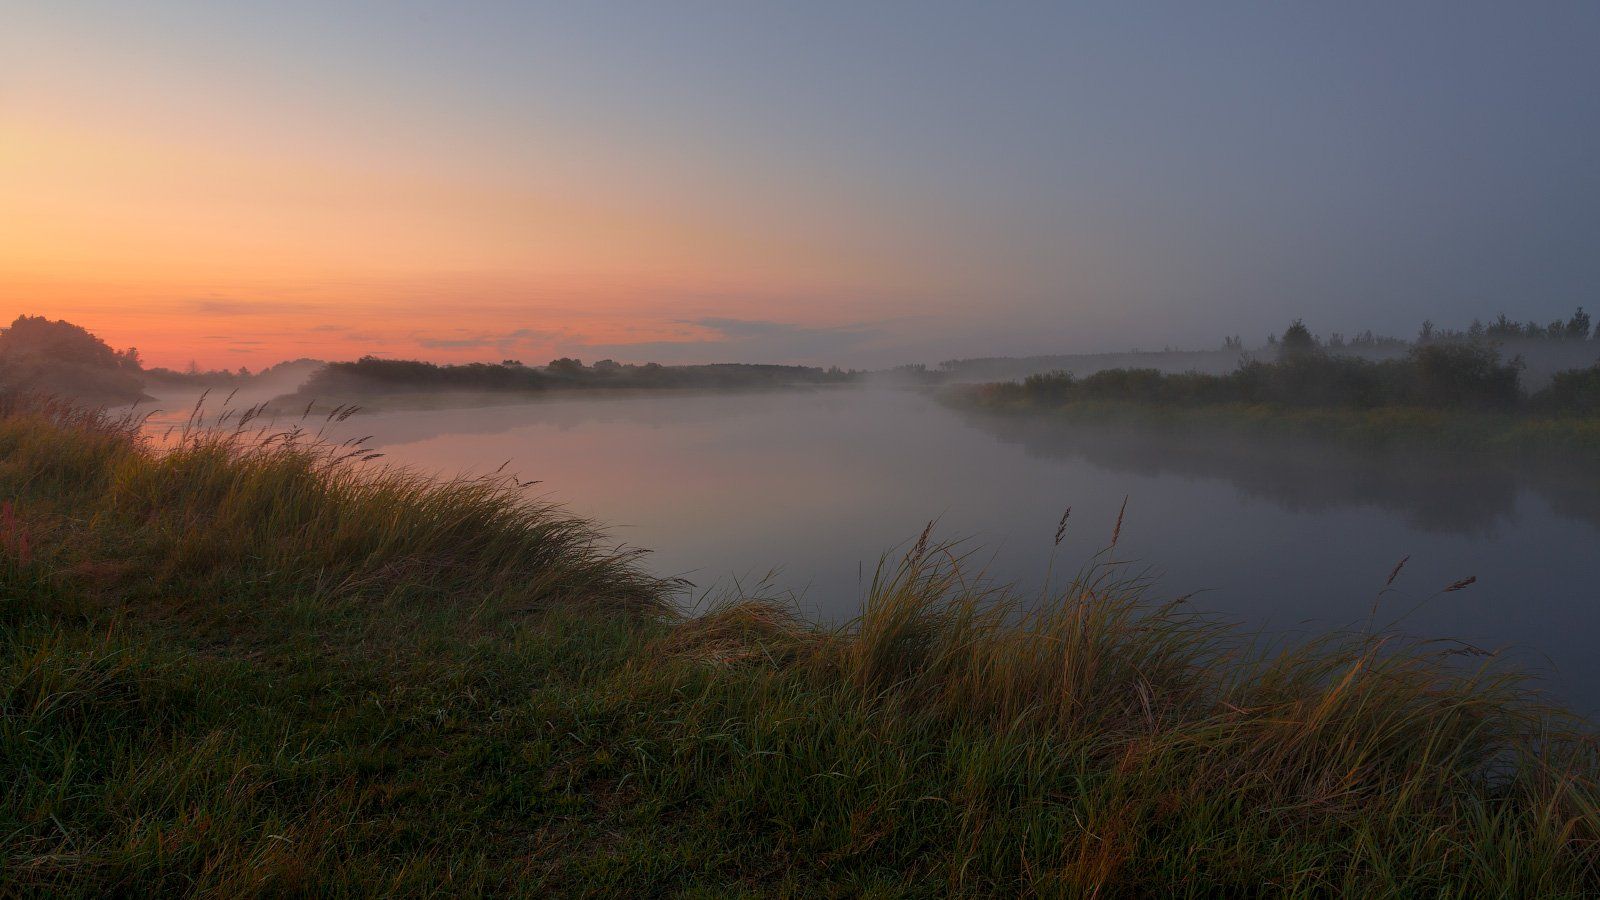 река Березина, туман, закат, лето, берег реки, травы на лугу, Михаил Кушнер